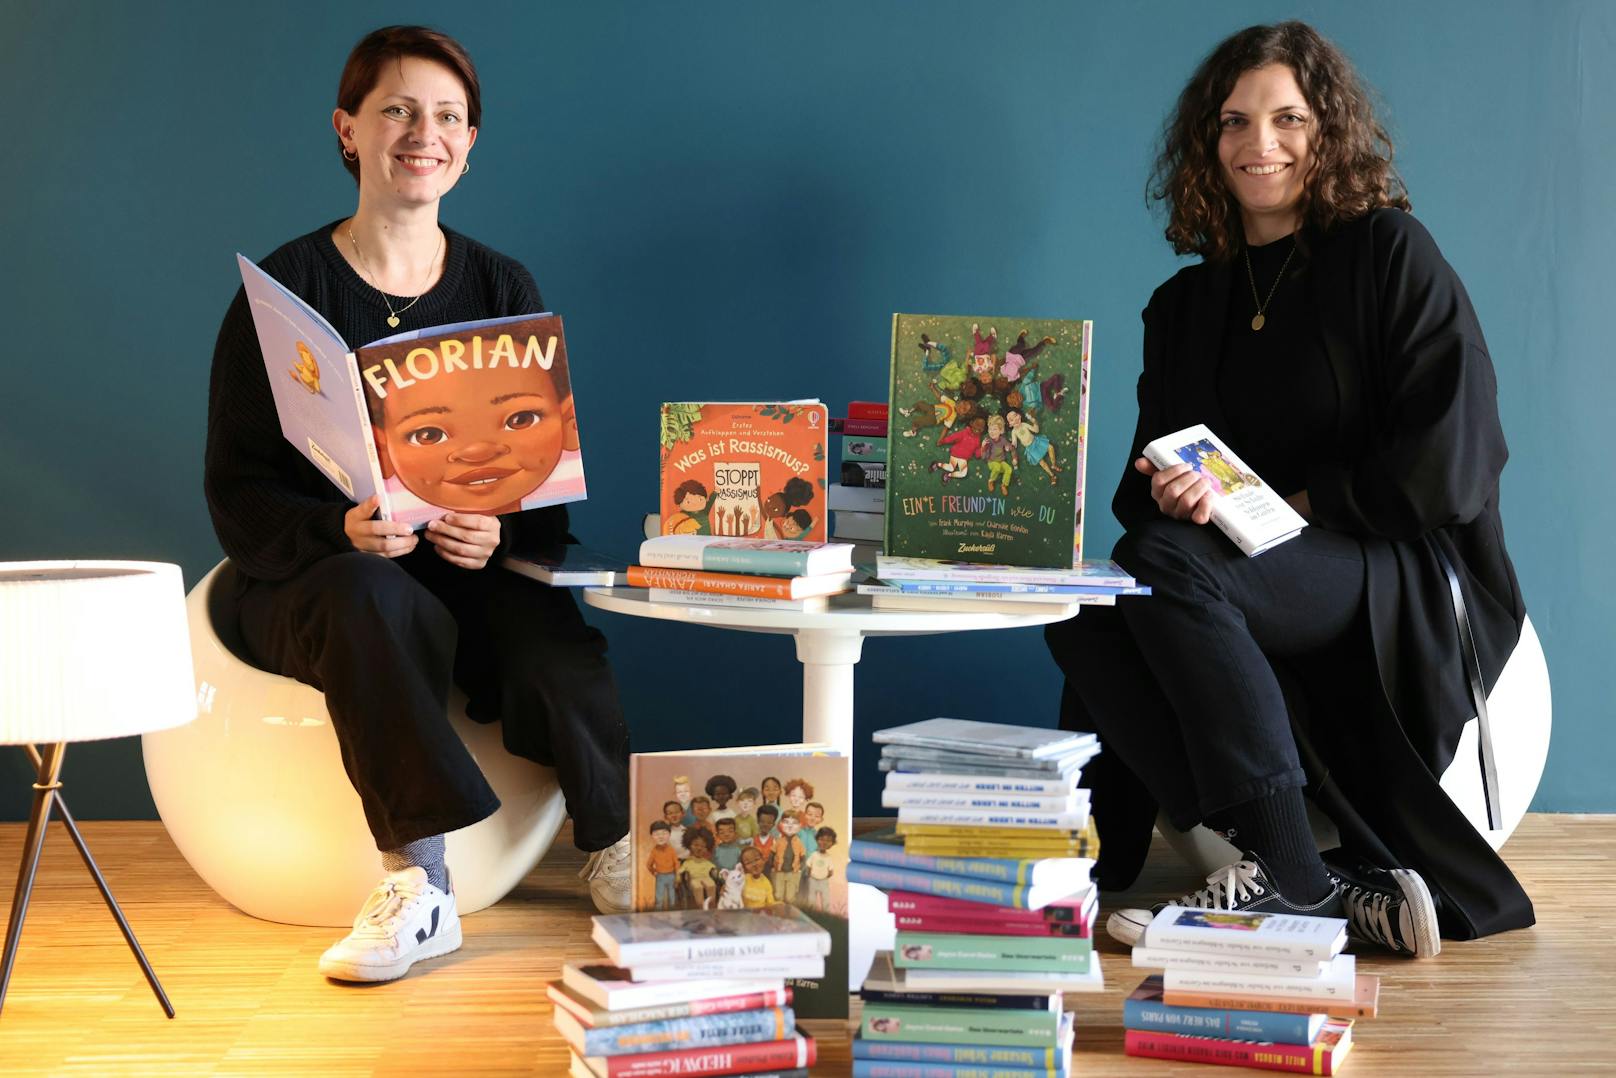 Bianca-Maria Braunshofer (36) und Katja Fetty (32), zwei "waschechte Buchhändlerinnen", wie sie sich selbst bezeichnen, erfüllten sich mit "o*books" ihren großen Traum.